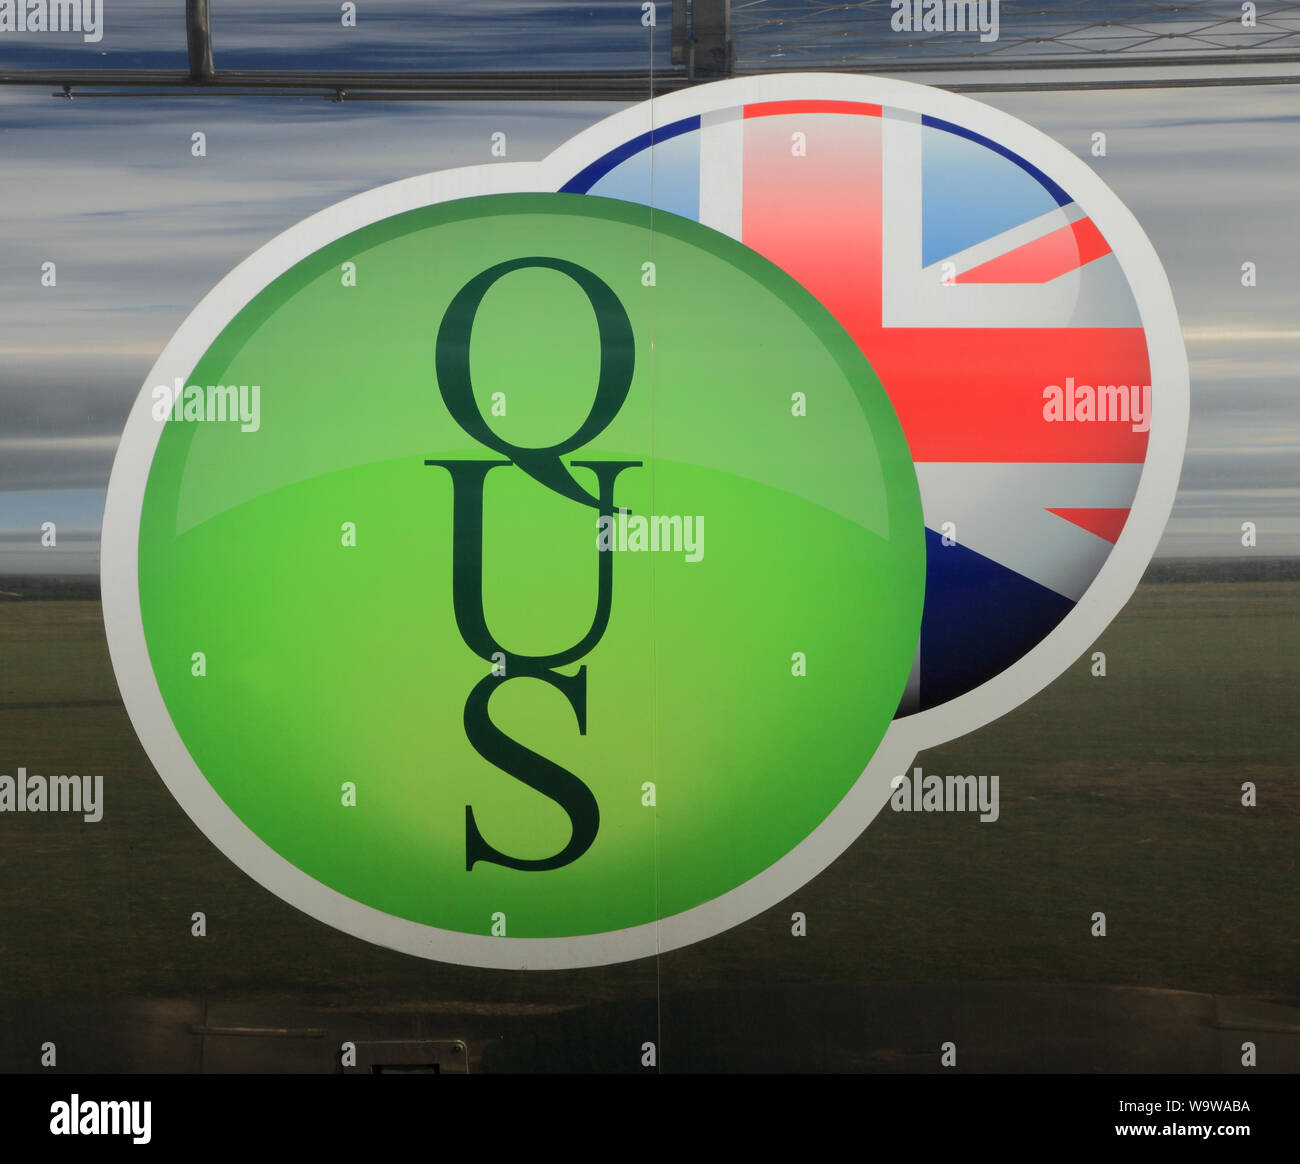 Der QUS, Logos, Zeichen, AdBlue Tankwagen, England, Großbritannien Stockfoto